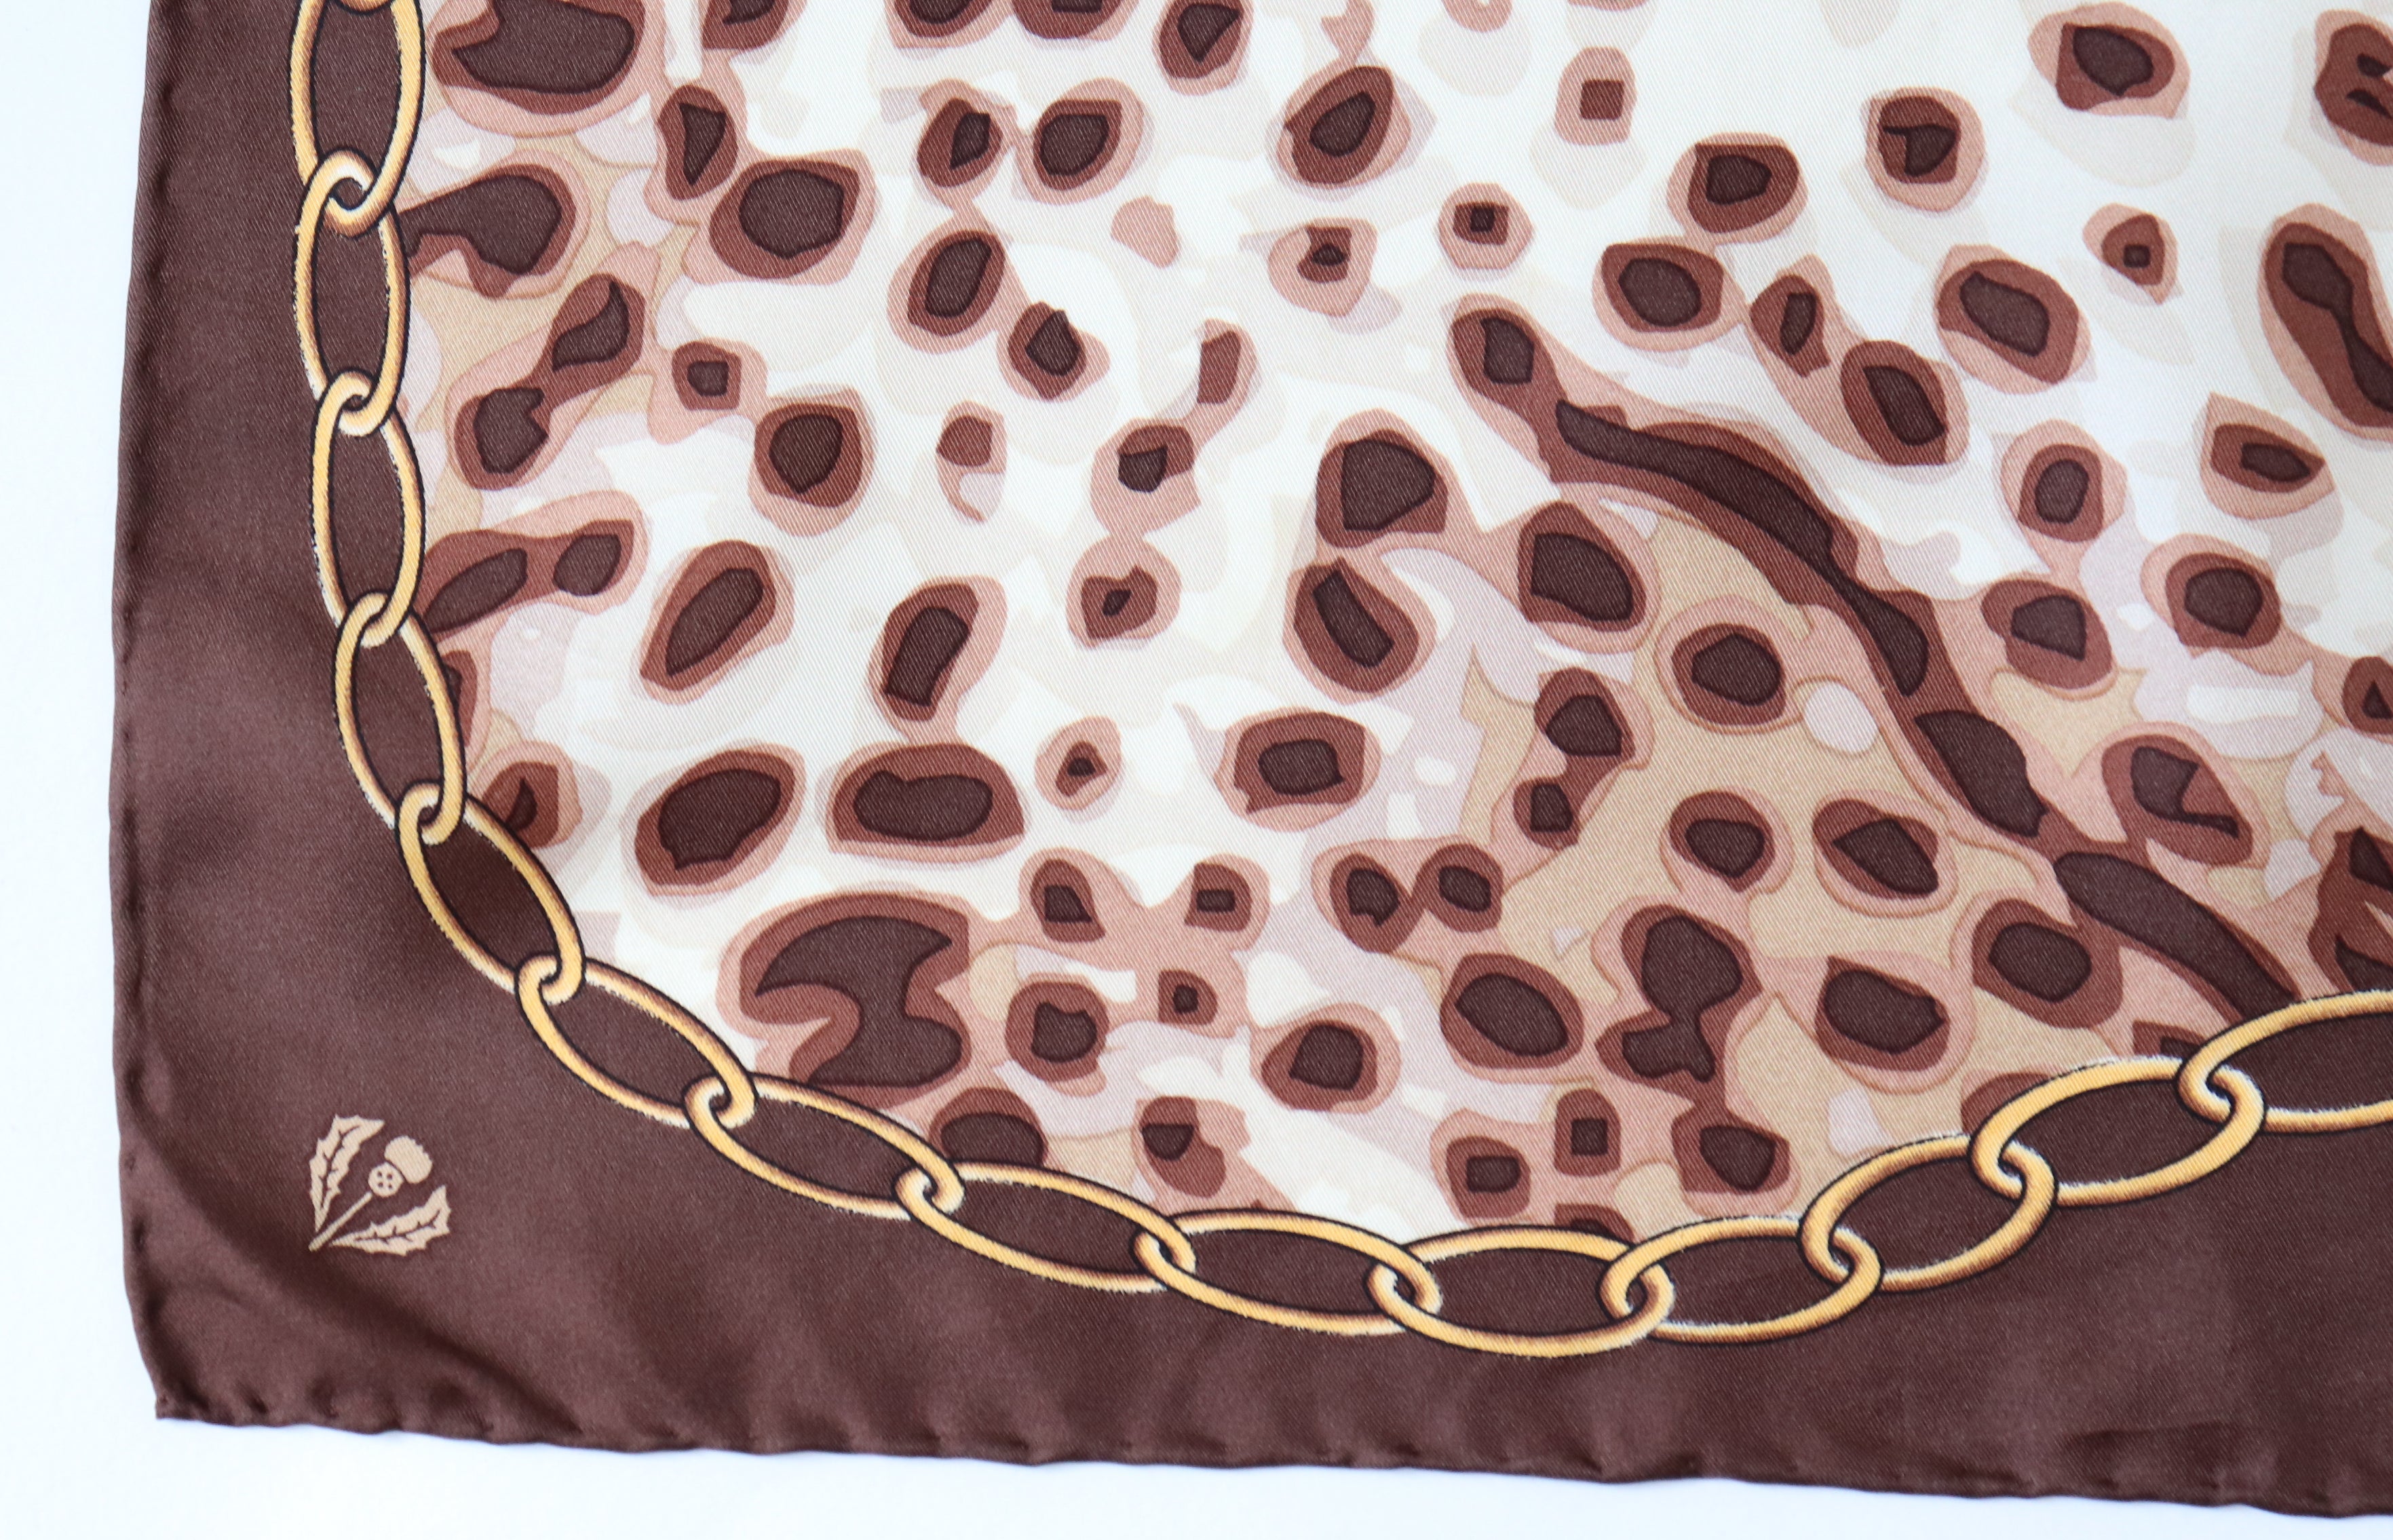 Leopard Print Vintage Silk Scarf  - Brown / Beige  - LARGE